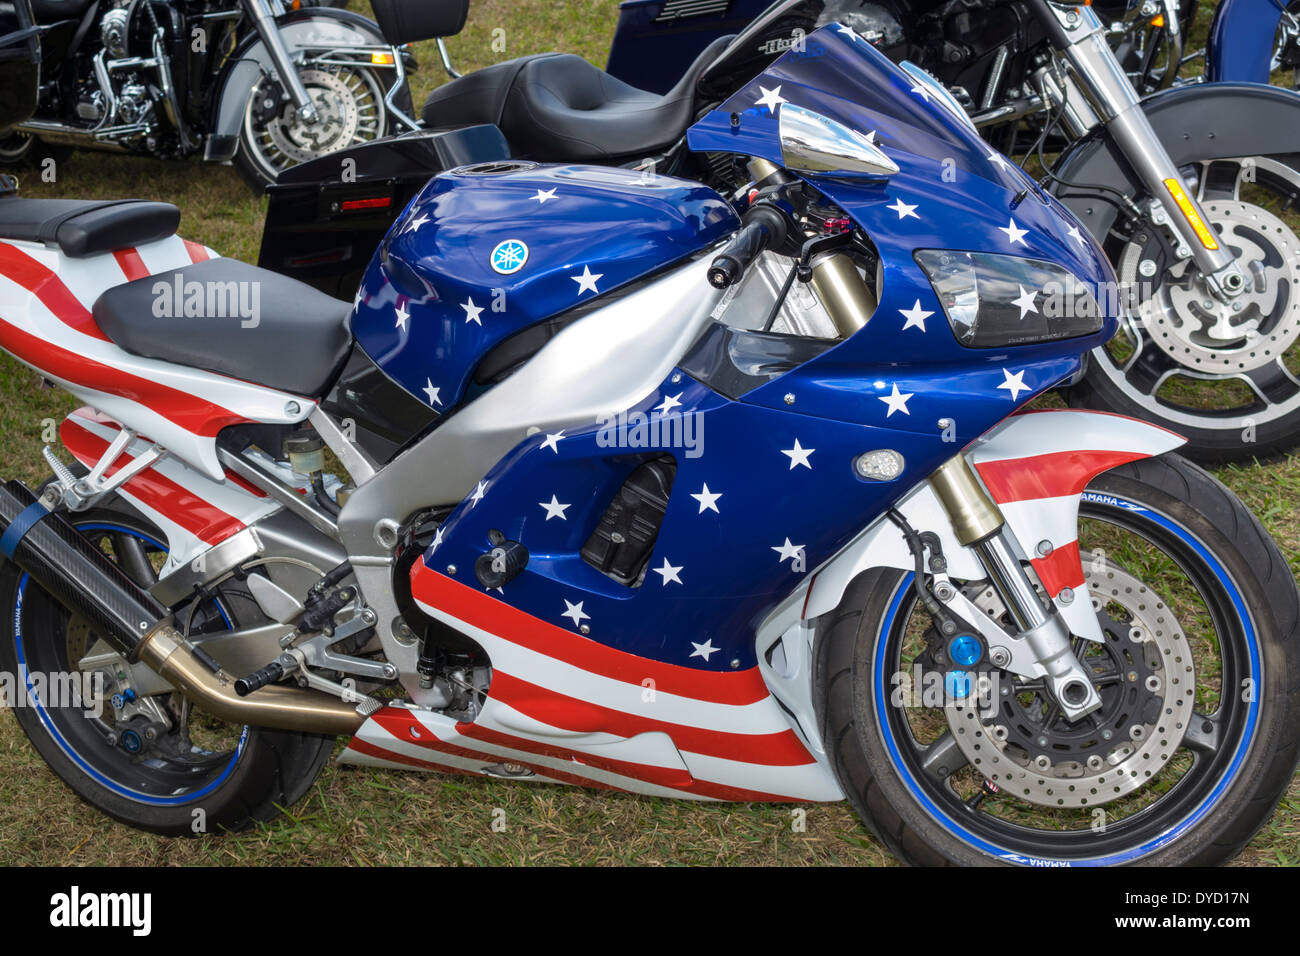 Everglades City Florida, moto motociclette, patriottico, strisce di stelle, colori bandiera, personalizzato, visitatori viaggio turismo turistico punto di riferimento Foto Stock